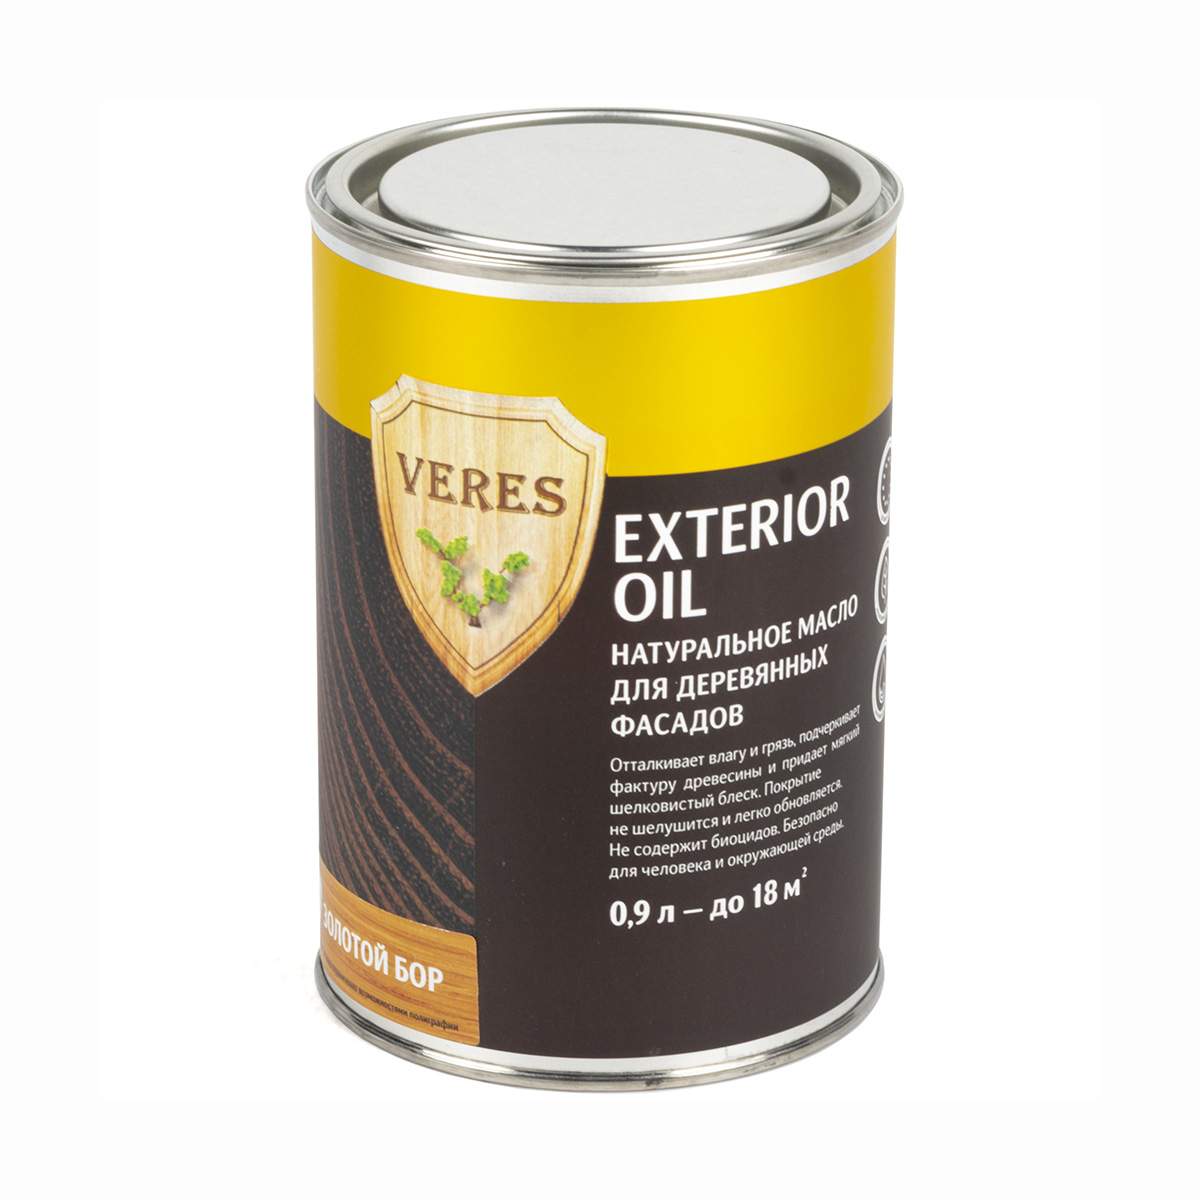 Масло для дерева Veres для наружных работ Oil Exterior №17, 0,9 л, золотой бор